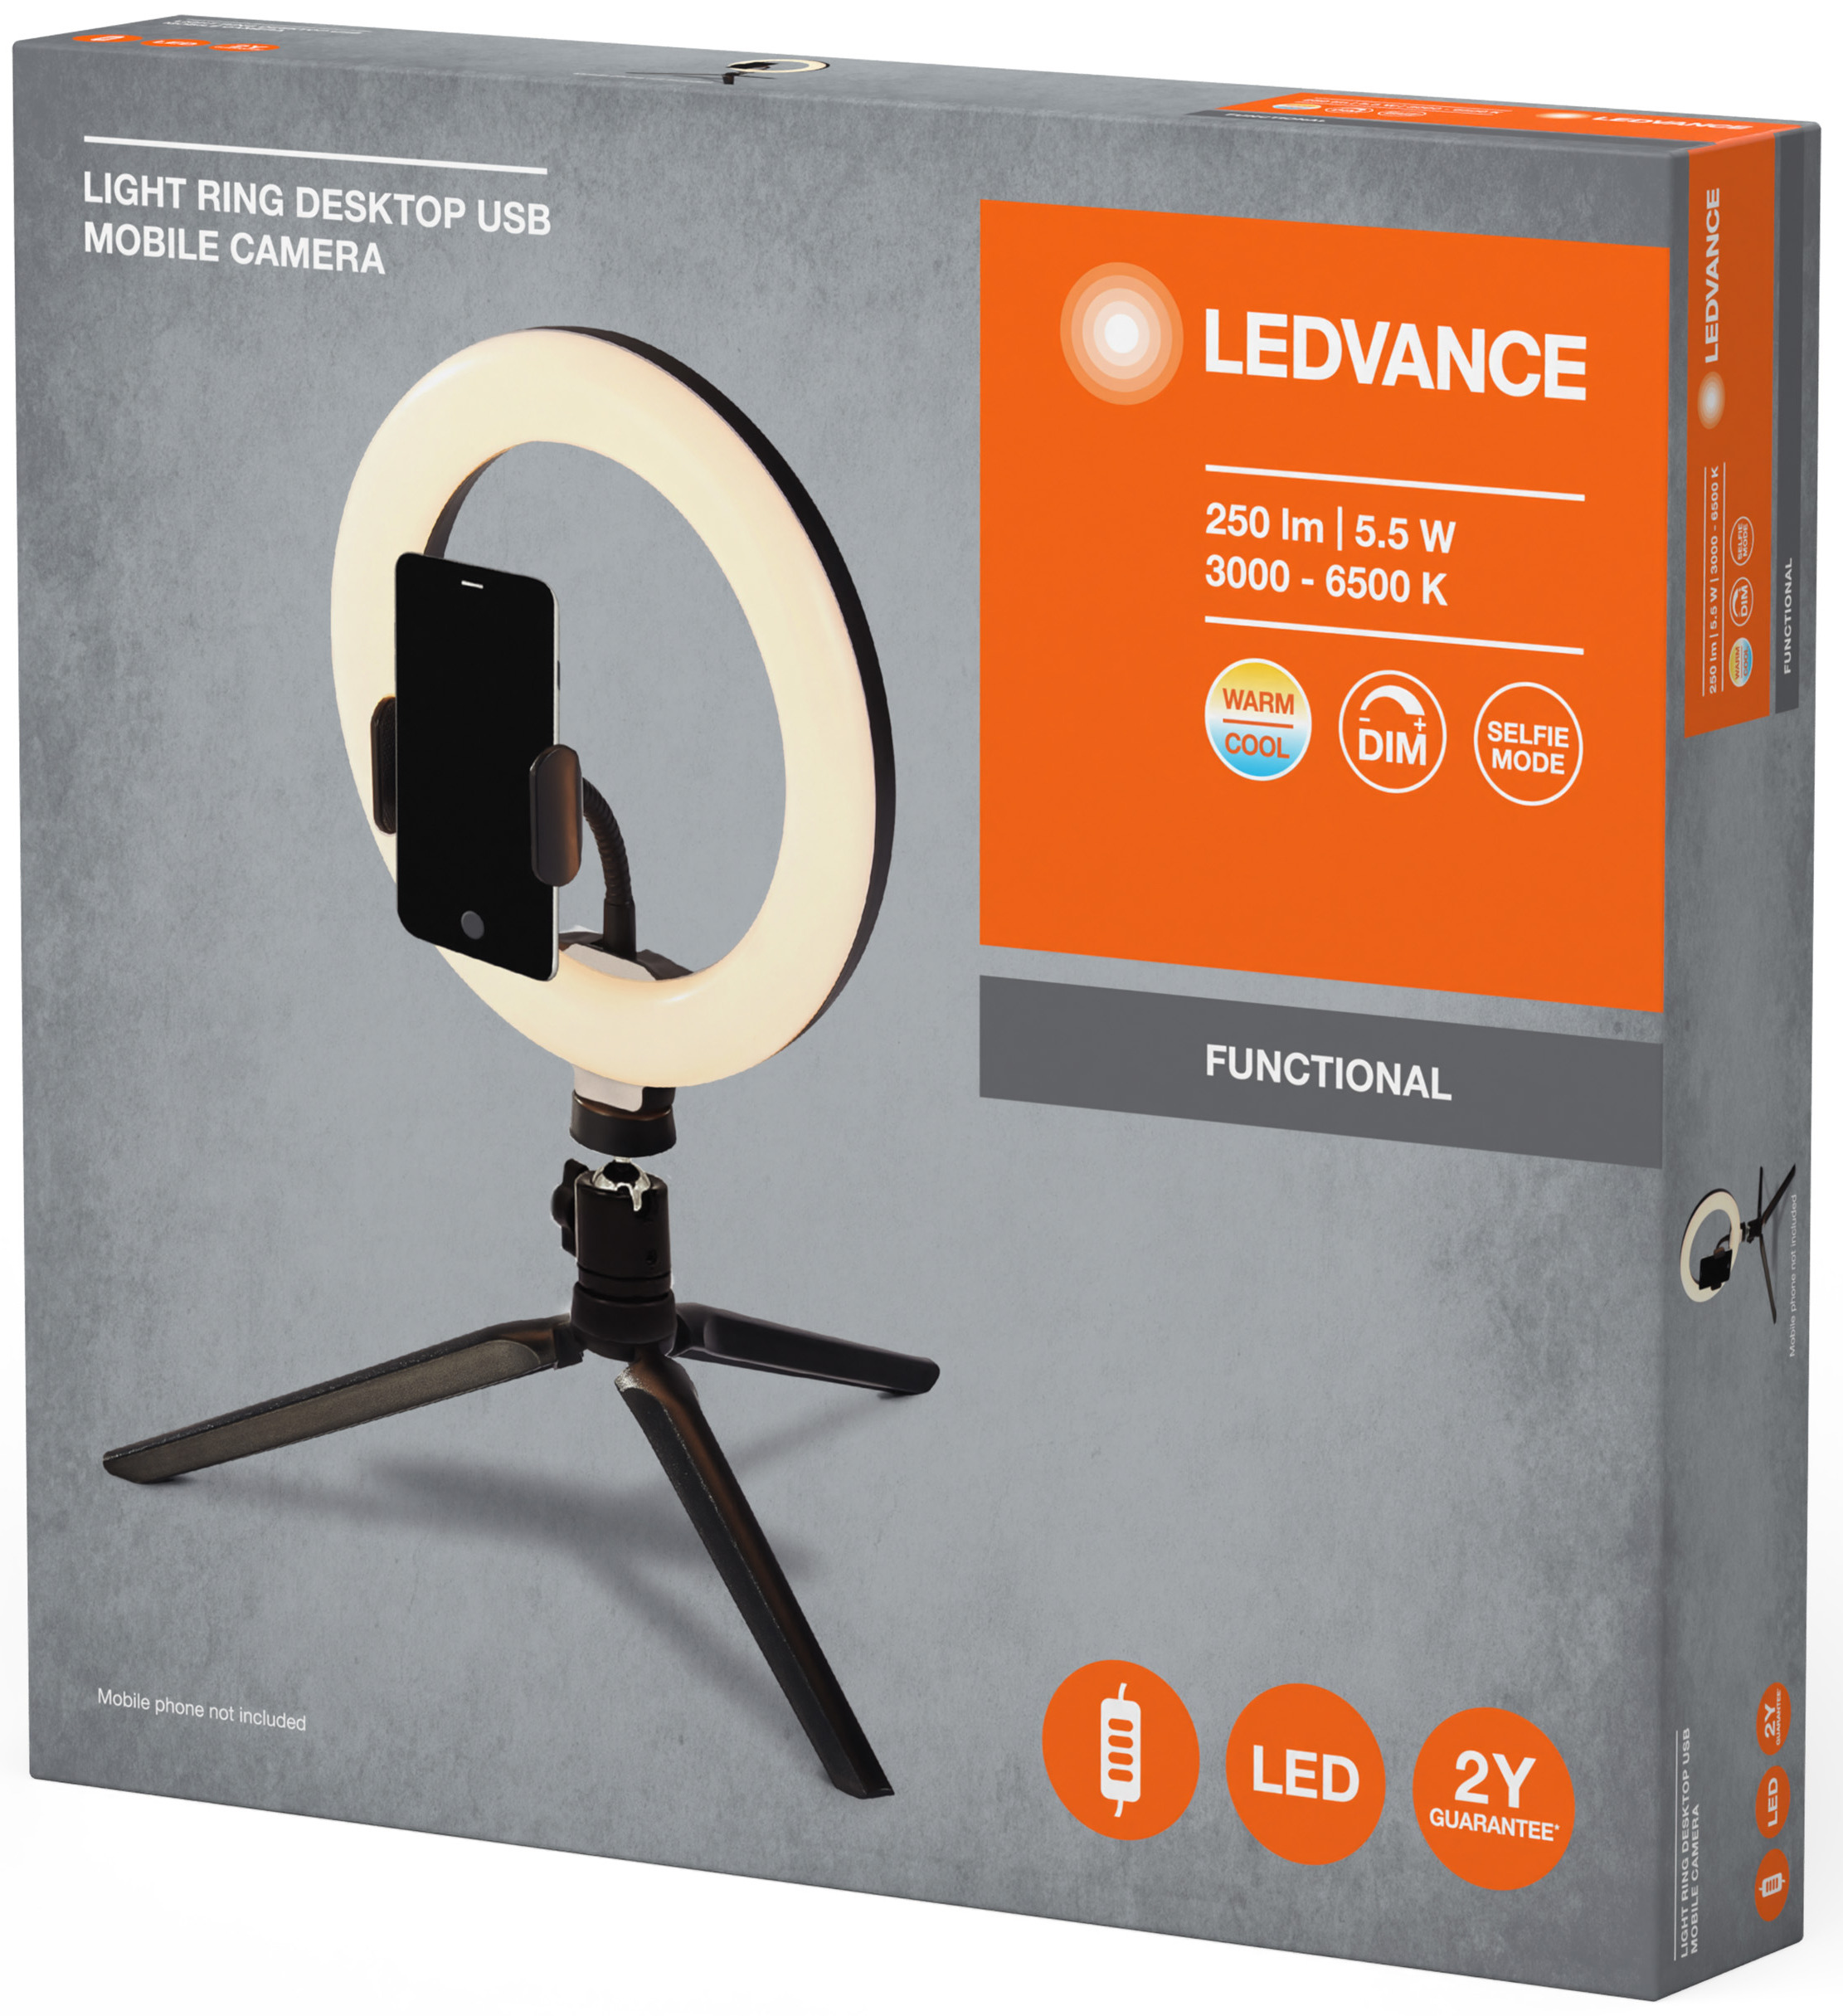 Світильник кільцевий Ledvance Mobile Camera Light Ring Desktop Usb (4058075666870) характеристики - фотографія 7